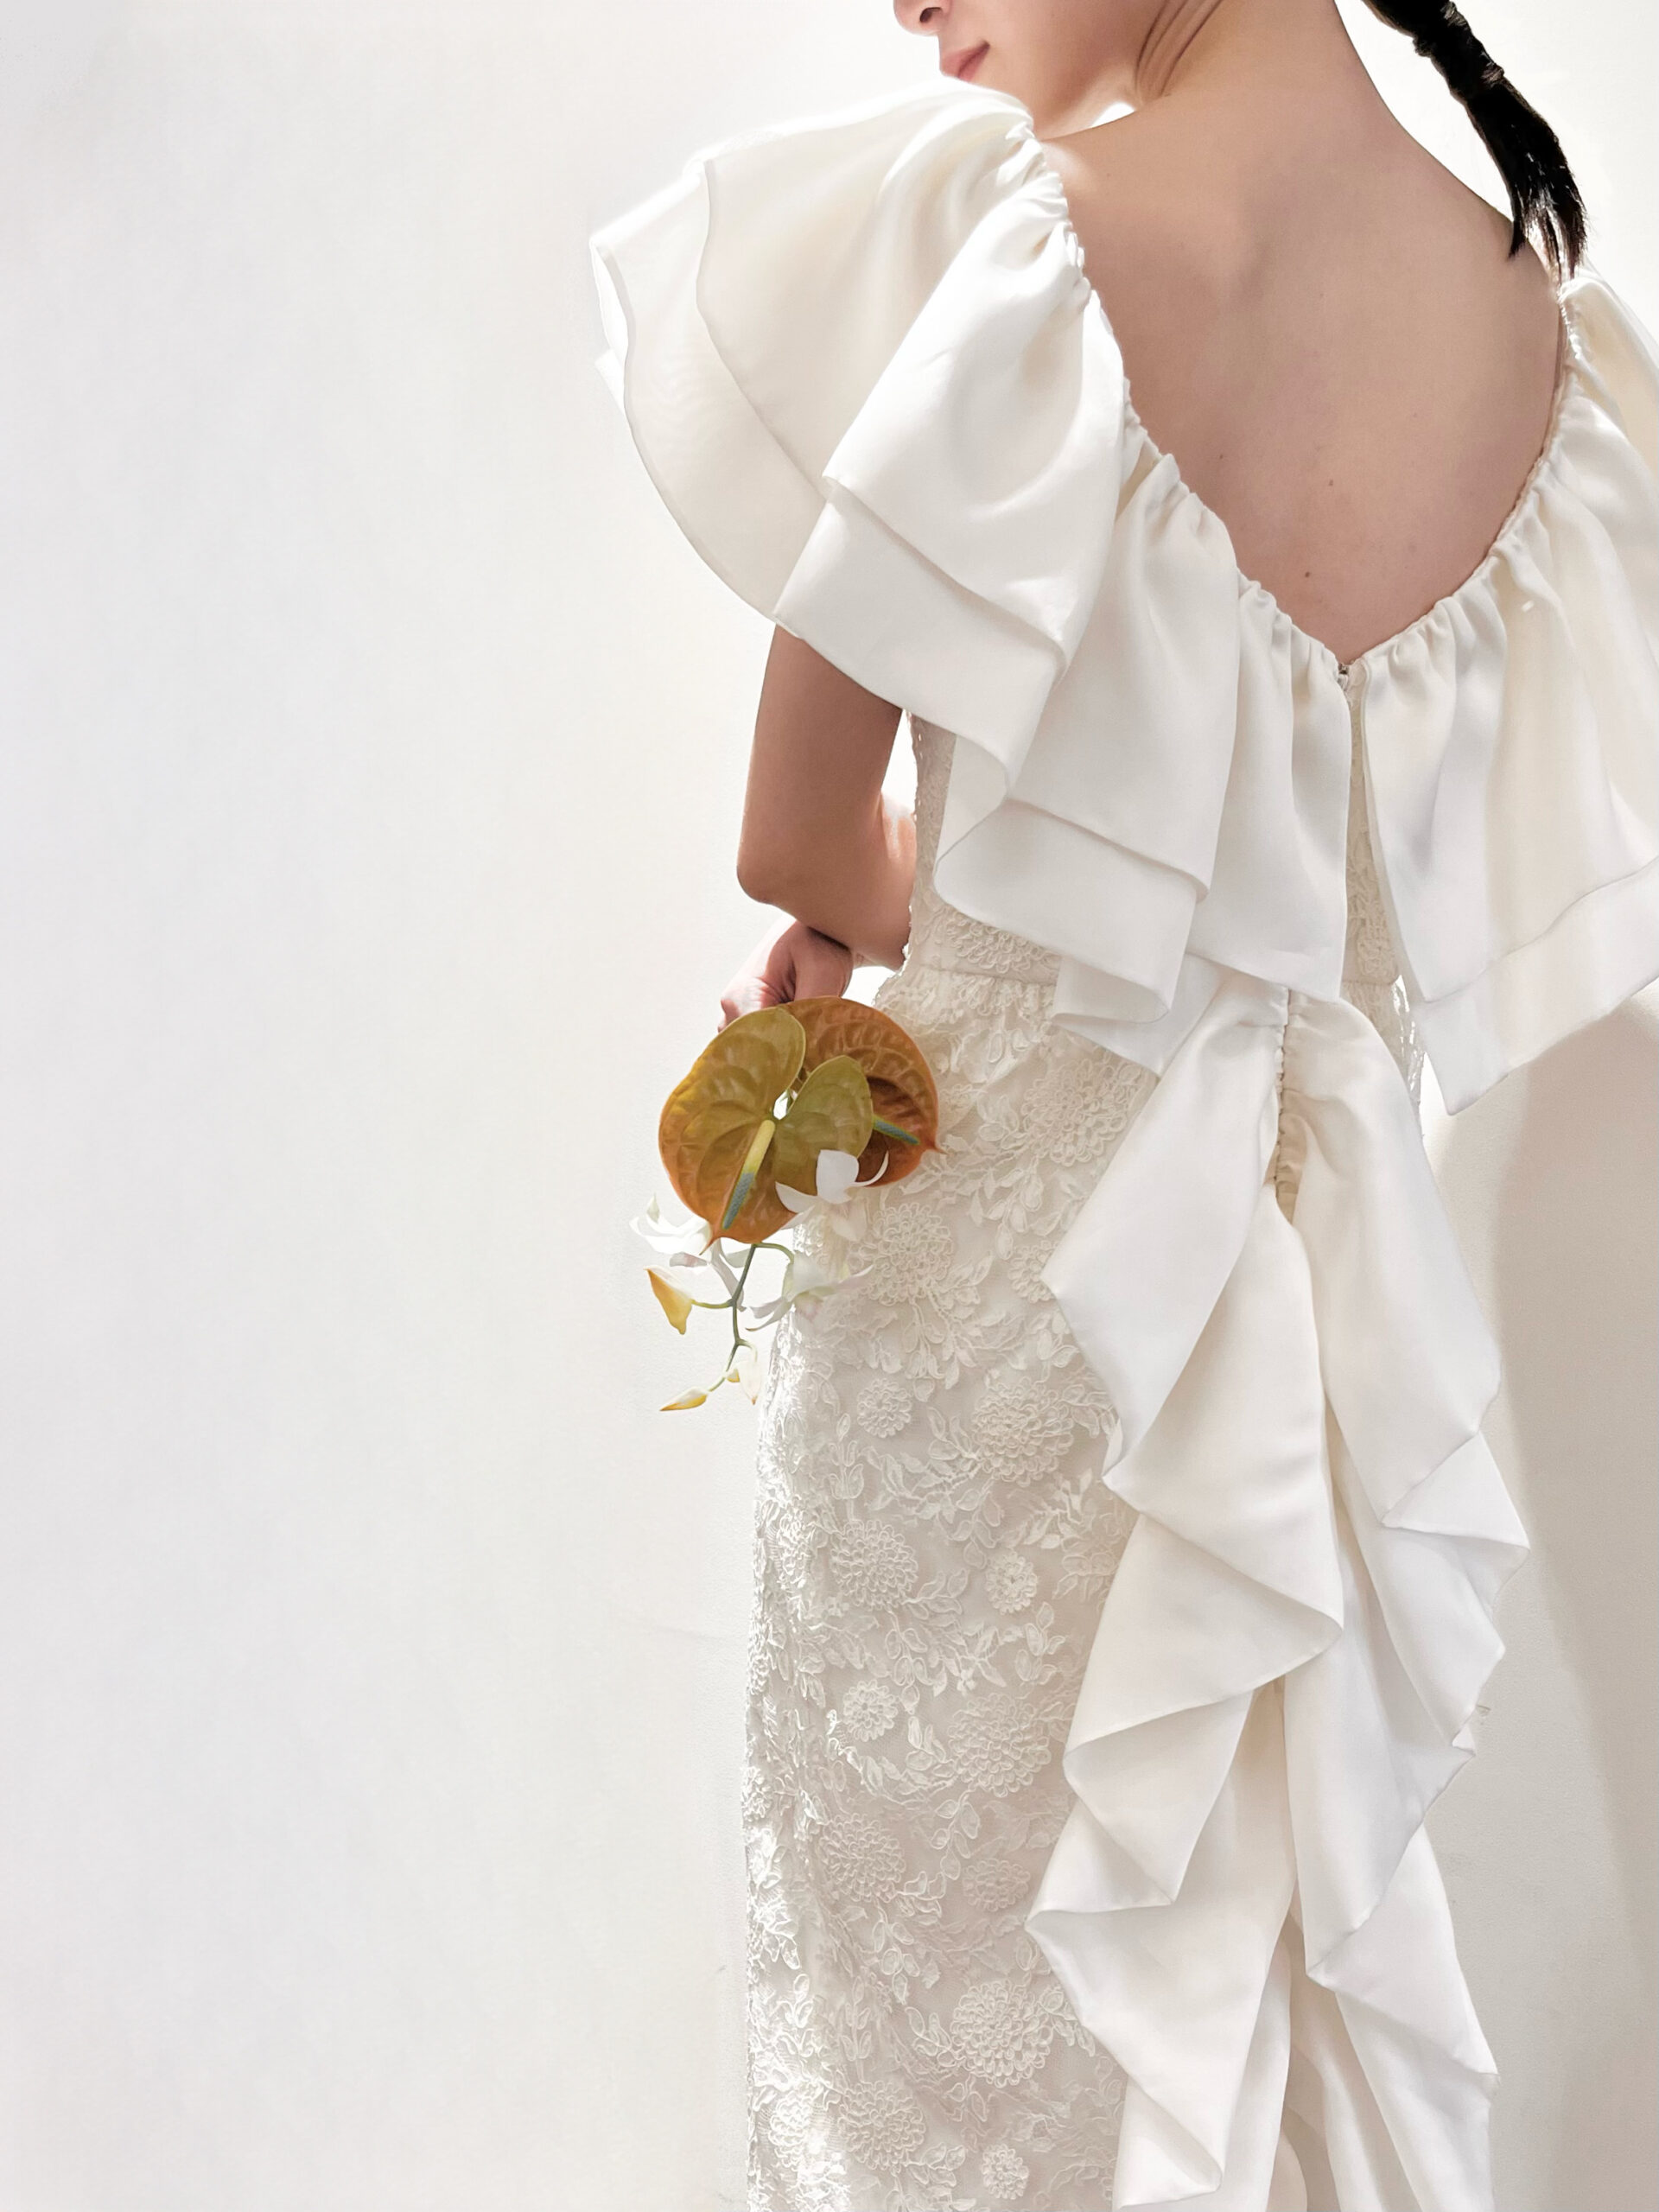 関西エリアの中でもおしゃれな神戸のプレ花嫁におすすめしたい人とかぶらないバックスタイルが特徴的なマルカリアンの新作の刺繍入りのスレンダーラインのドレス